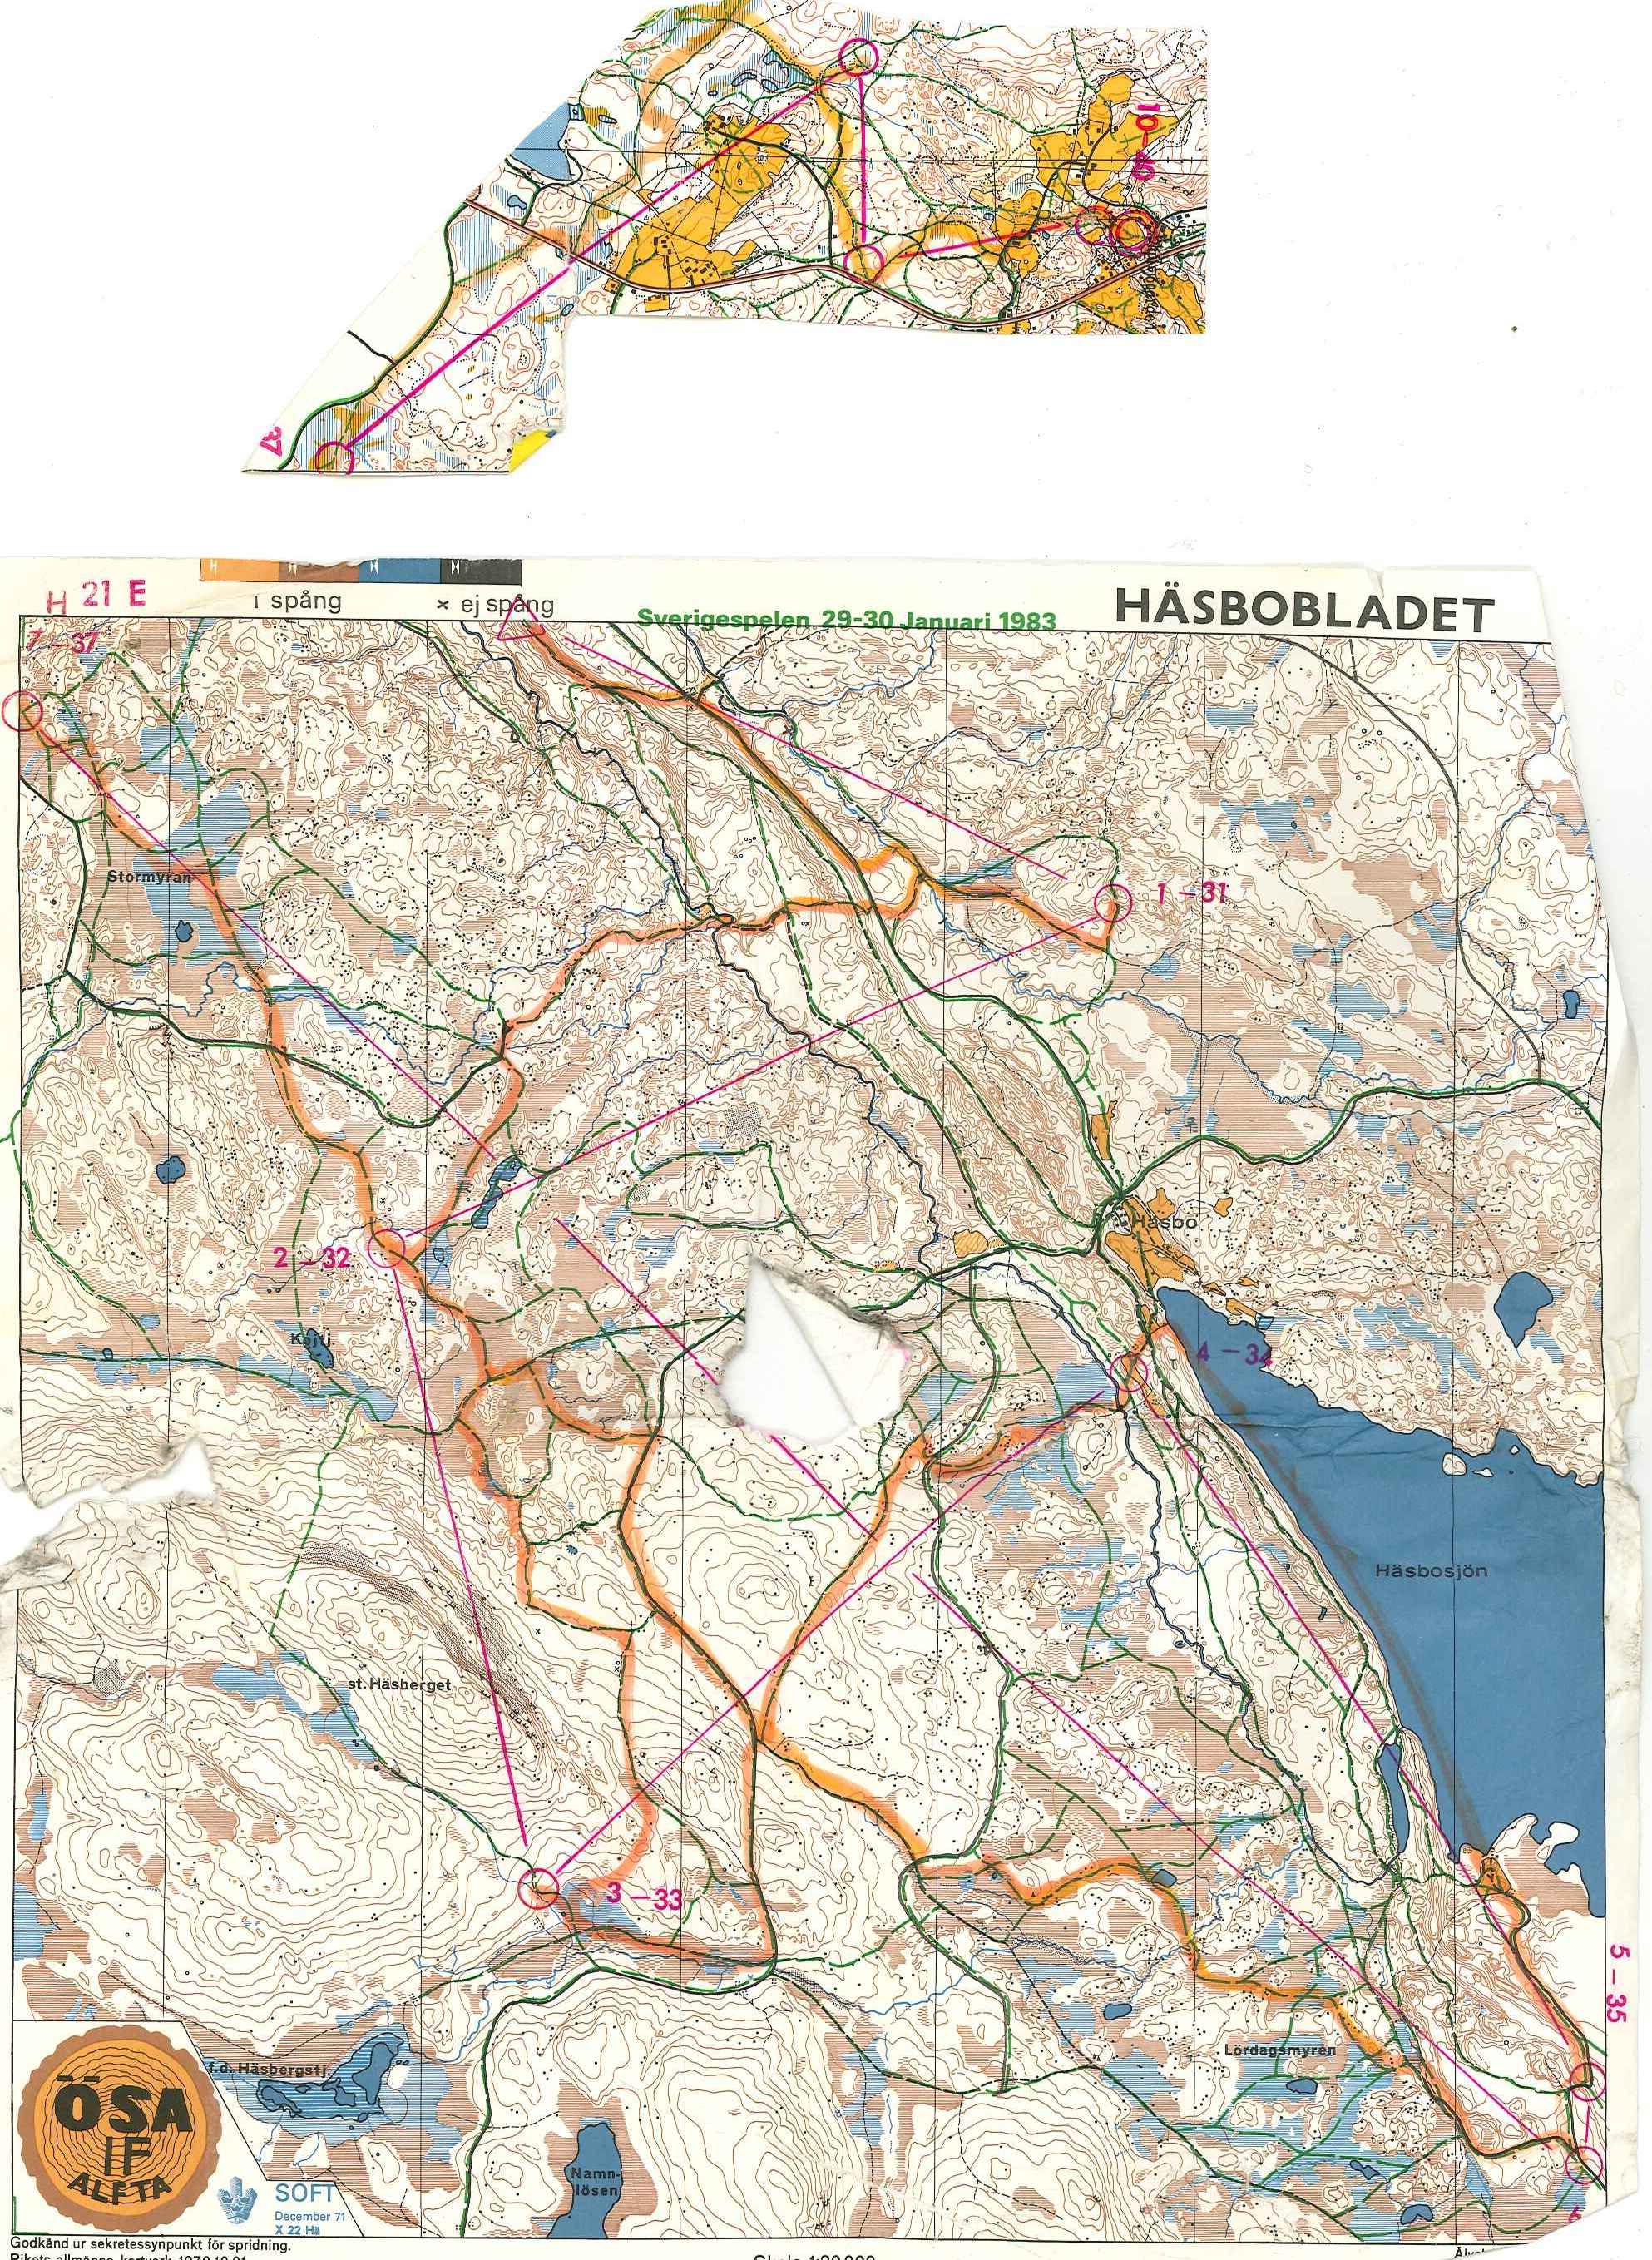 Sverigespelen skidO (1983-01-29)